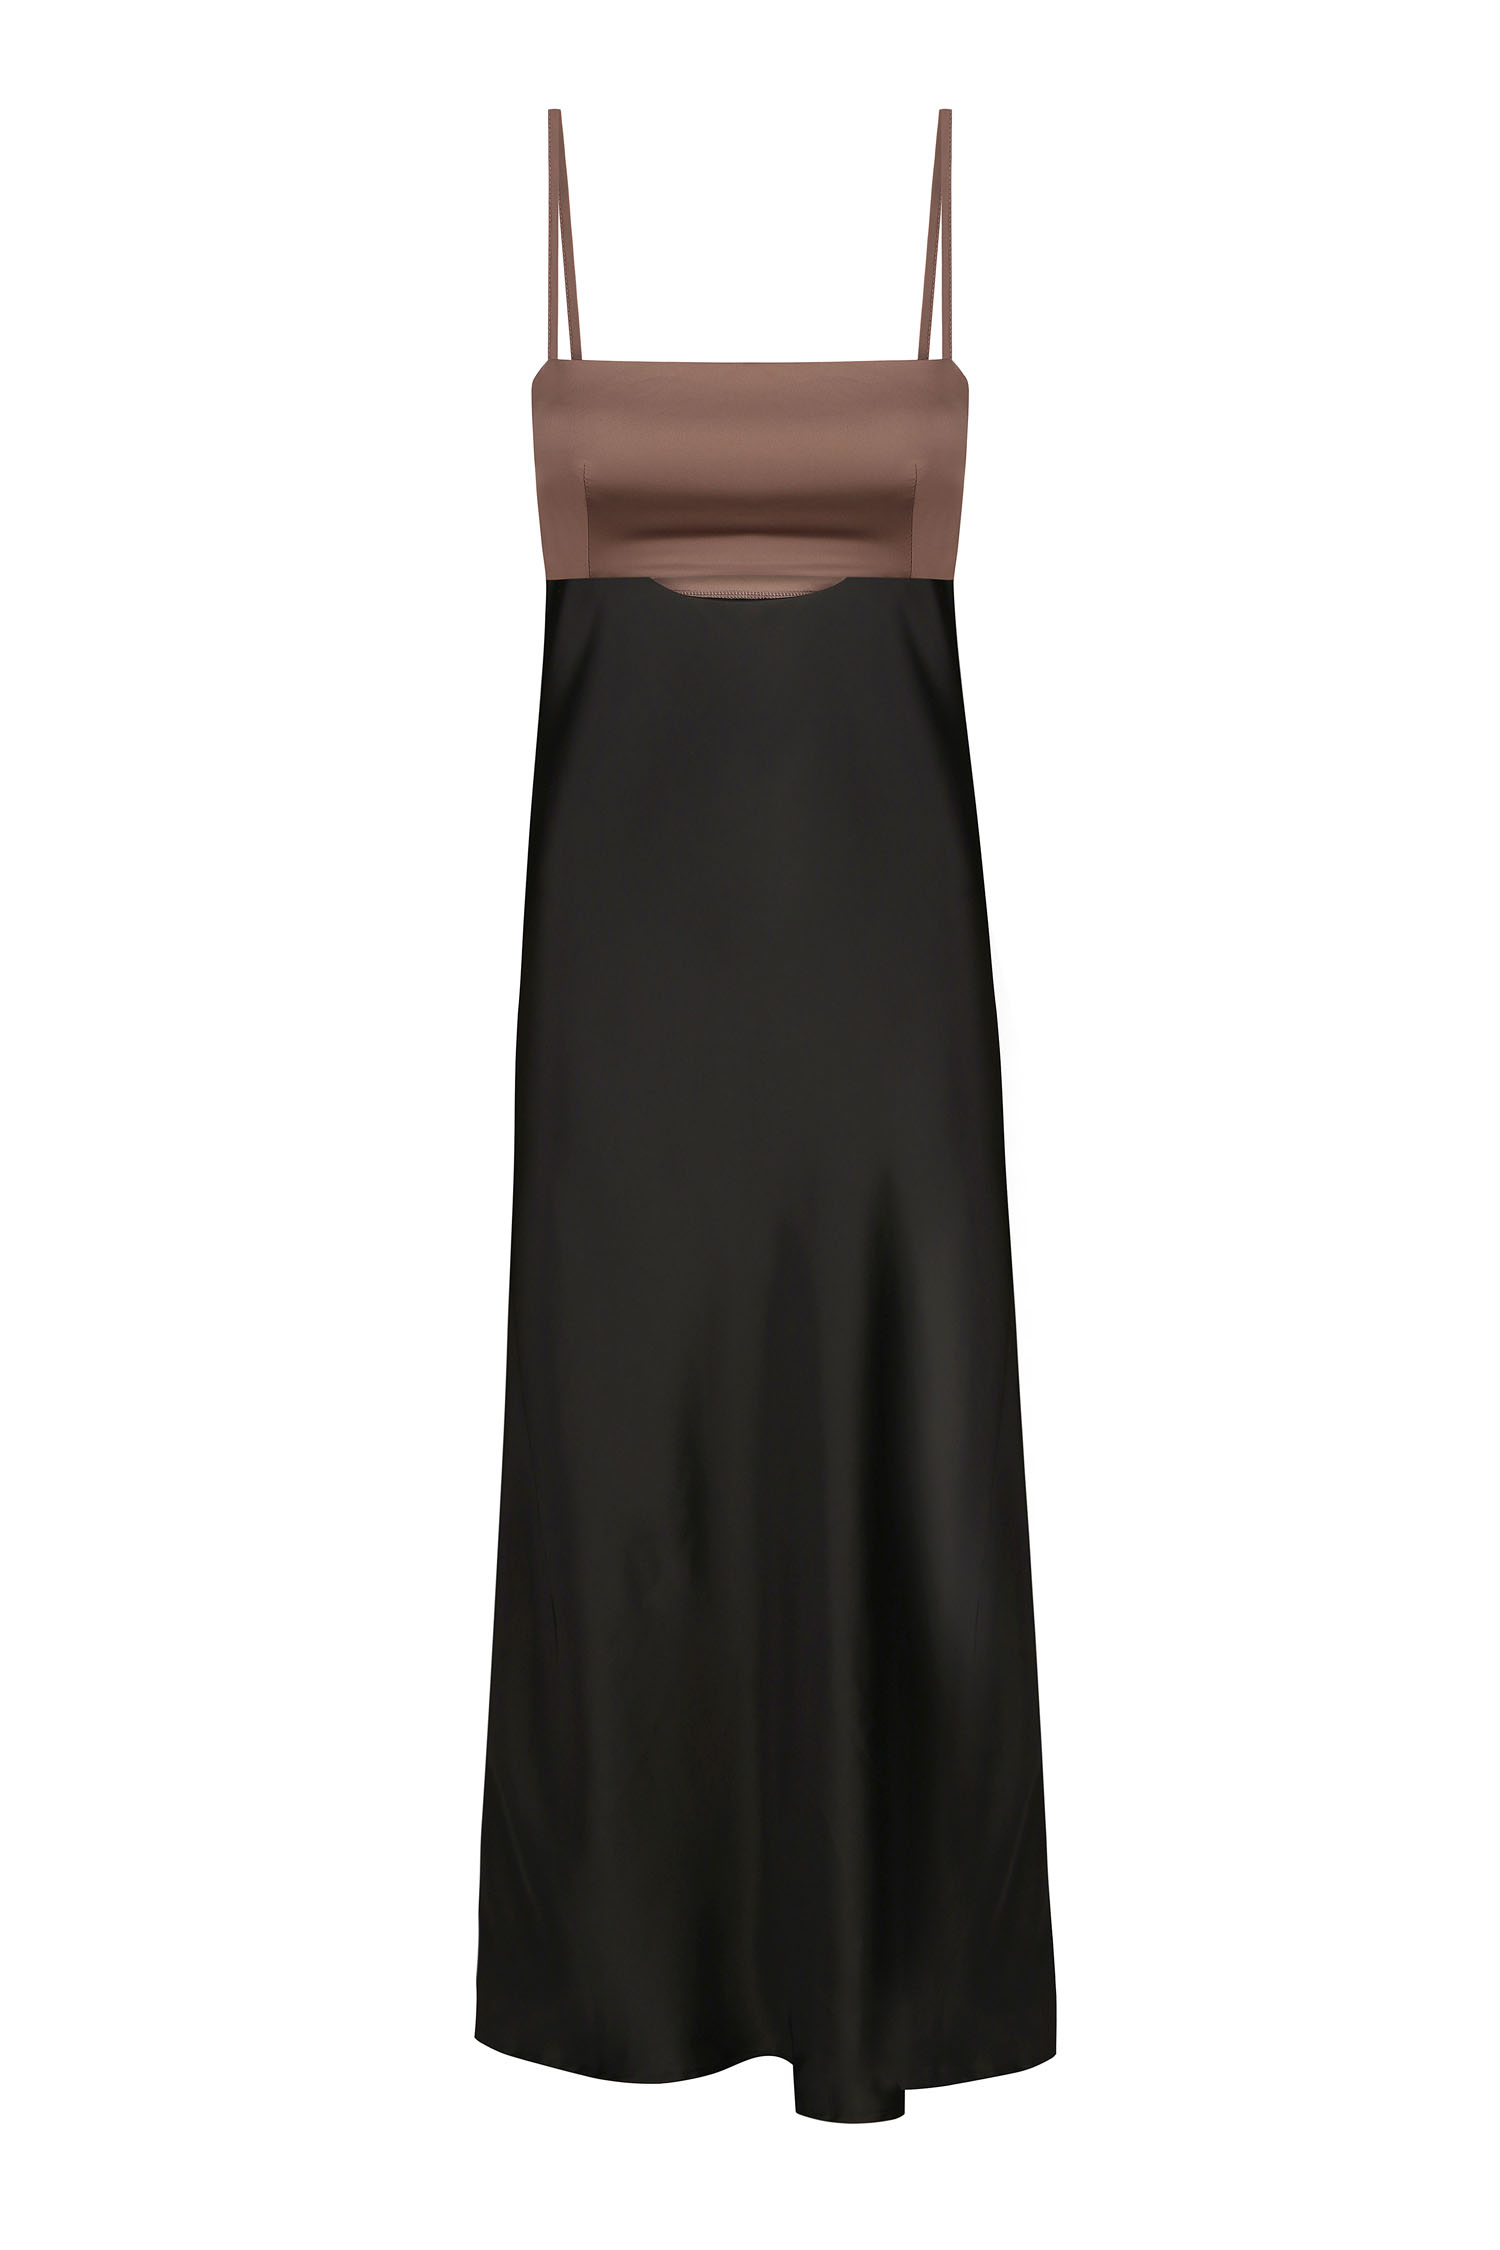 Сукня комбінована чорна з шоколадним верхом - THE LACE фото 150560